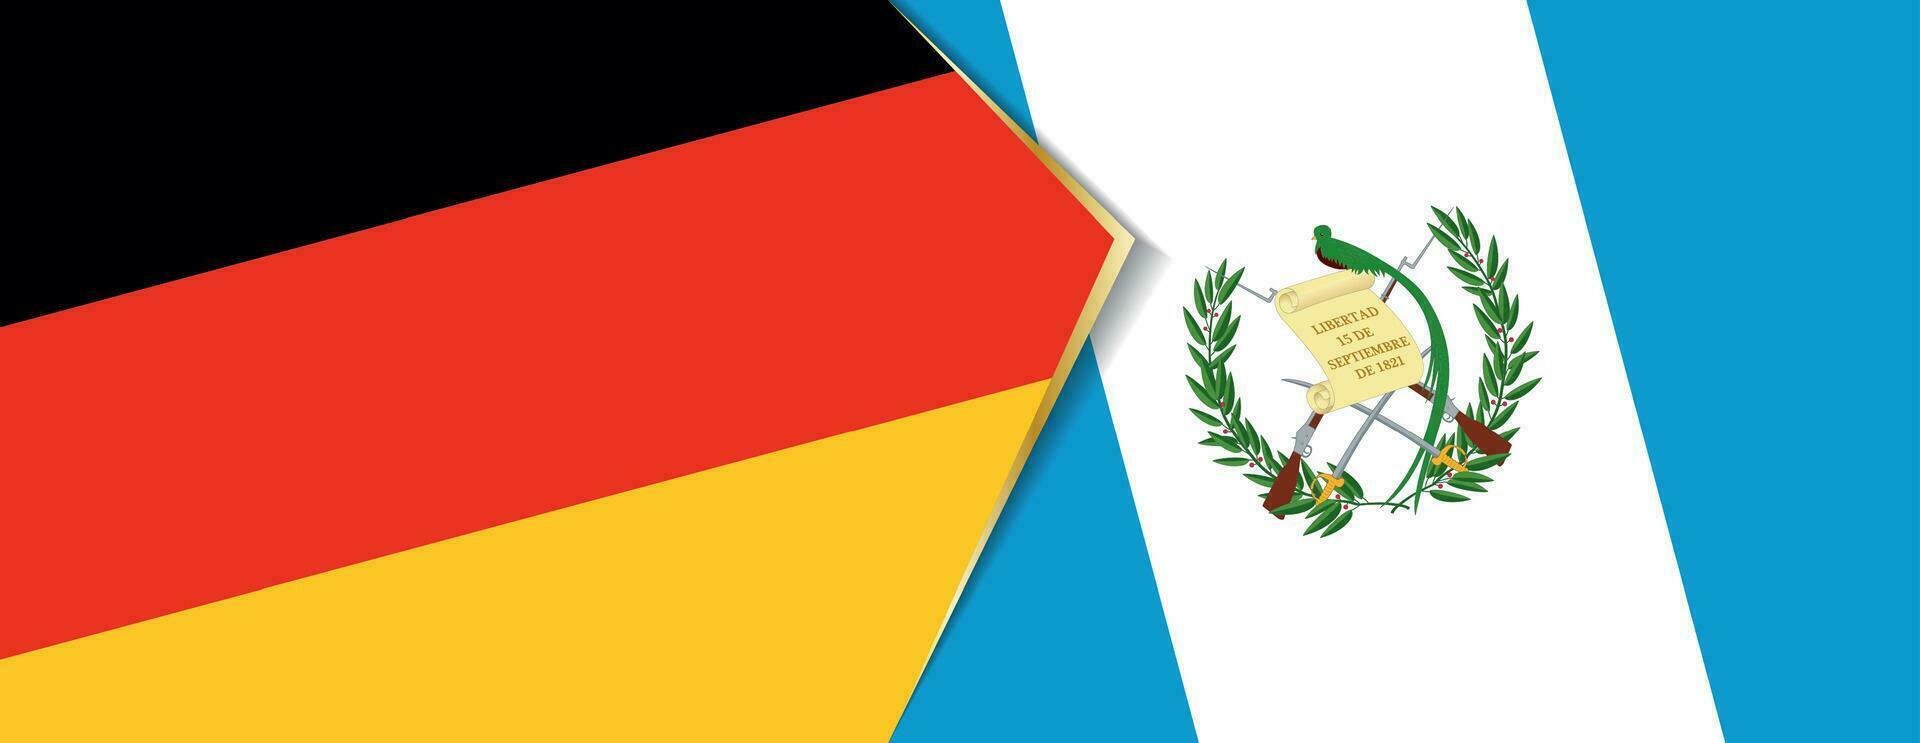 Tyskland och guatemala flaggor, två vektor flaggor.